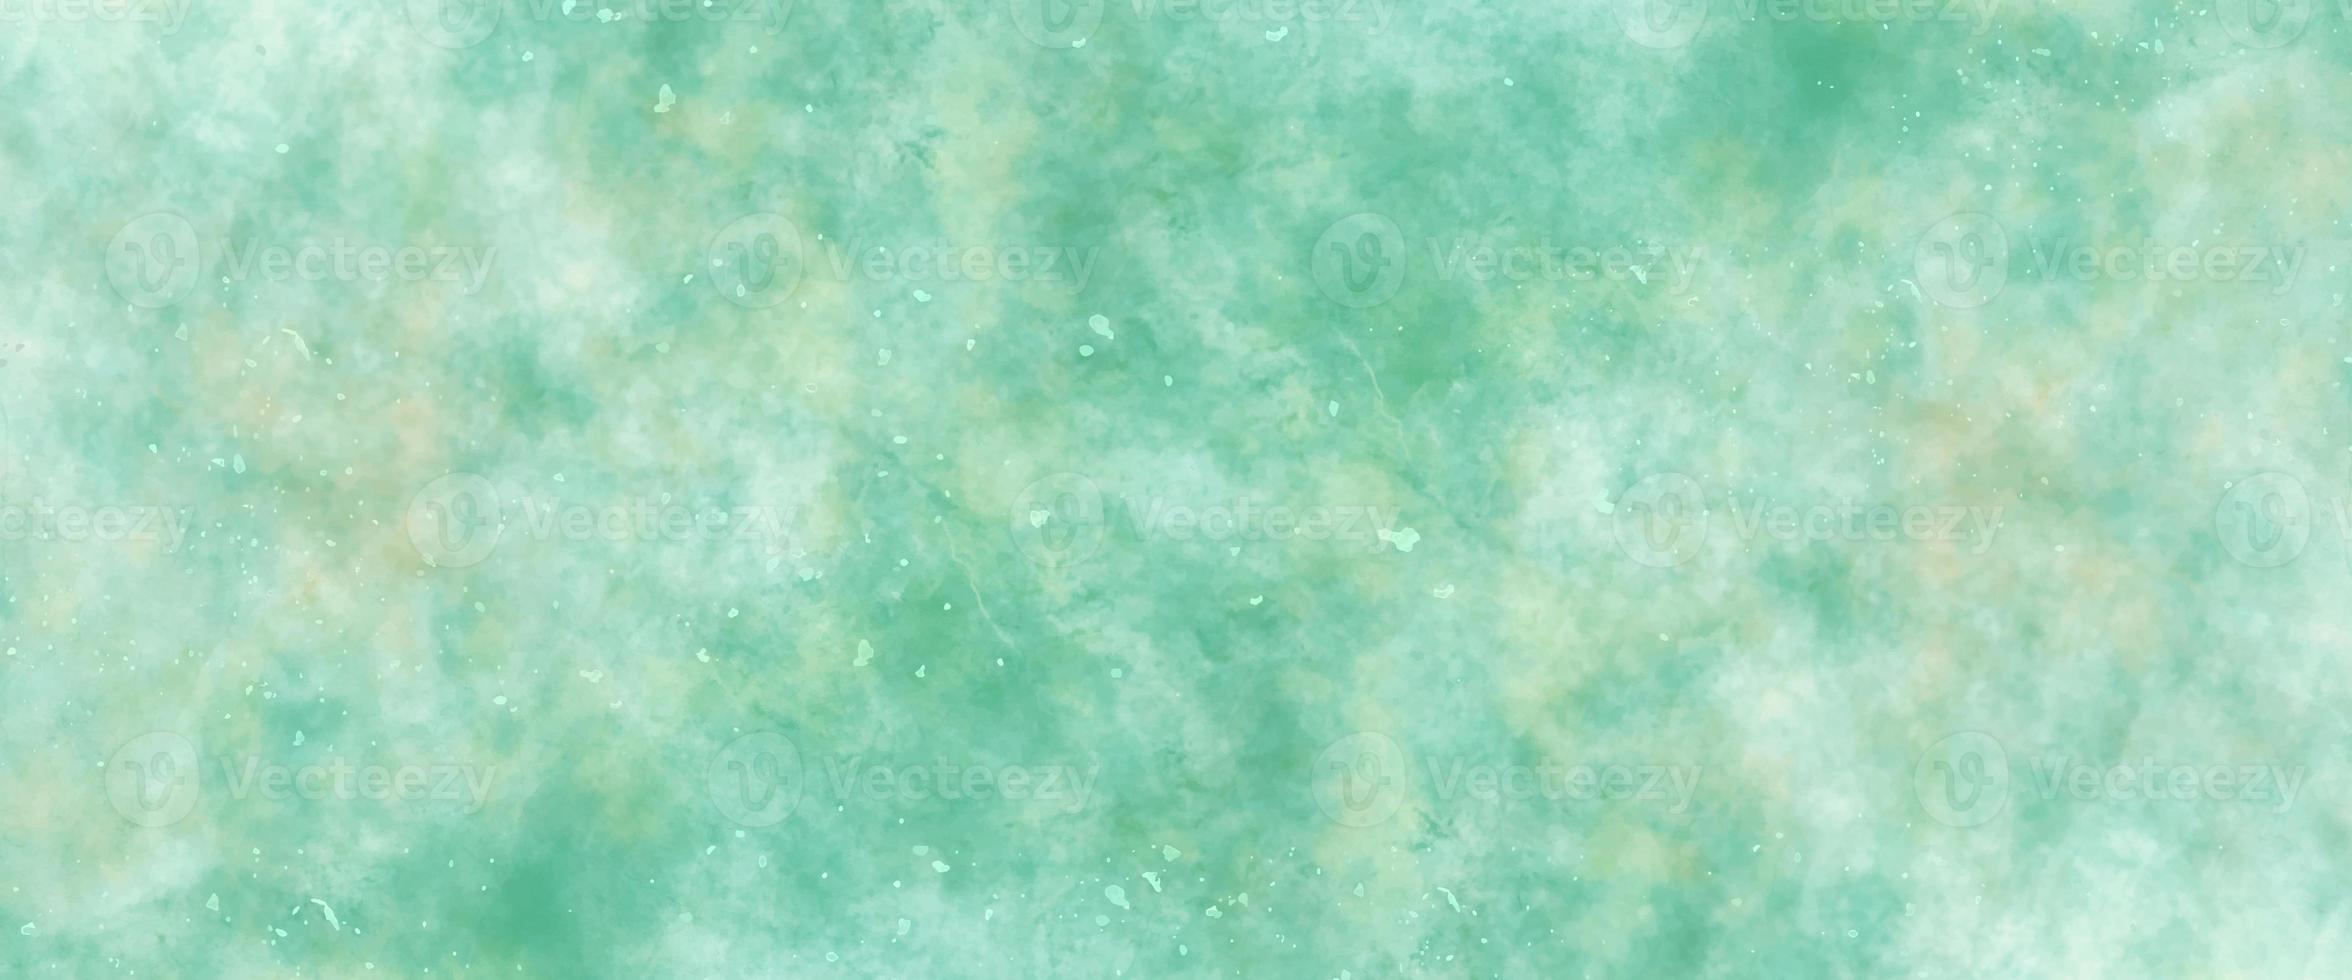 astratto acquerello dipingere sfondo. bellissimo blu verde e giallo acquerello spruzzo design.colorato pianura verde toni acquerello texture.carta strutturato aquarelle tela per moderno creativo design foto